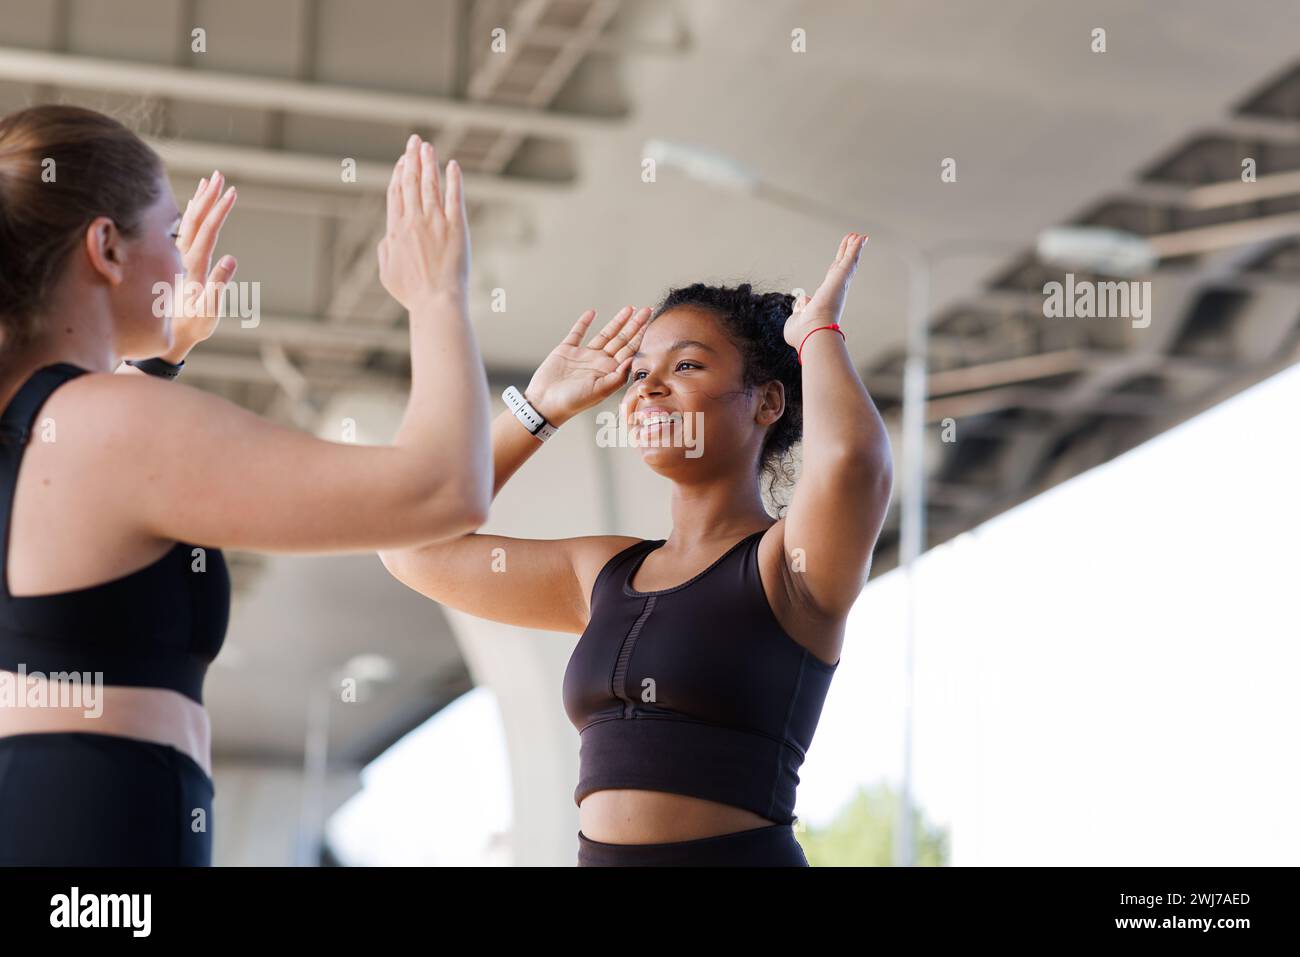 Junge lächelnde Frau, die ihrem Fitness-Kumpel fünf gibt. Zwei Frauen in Übergröße geben sich nach einem intensiven Workout im Freien High-Five. Stockfoto